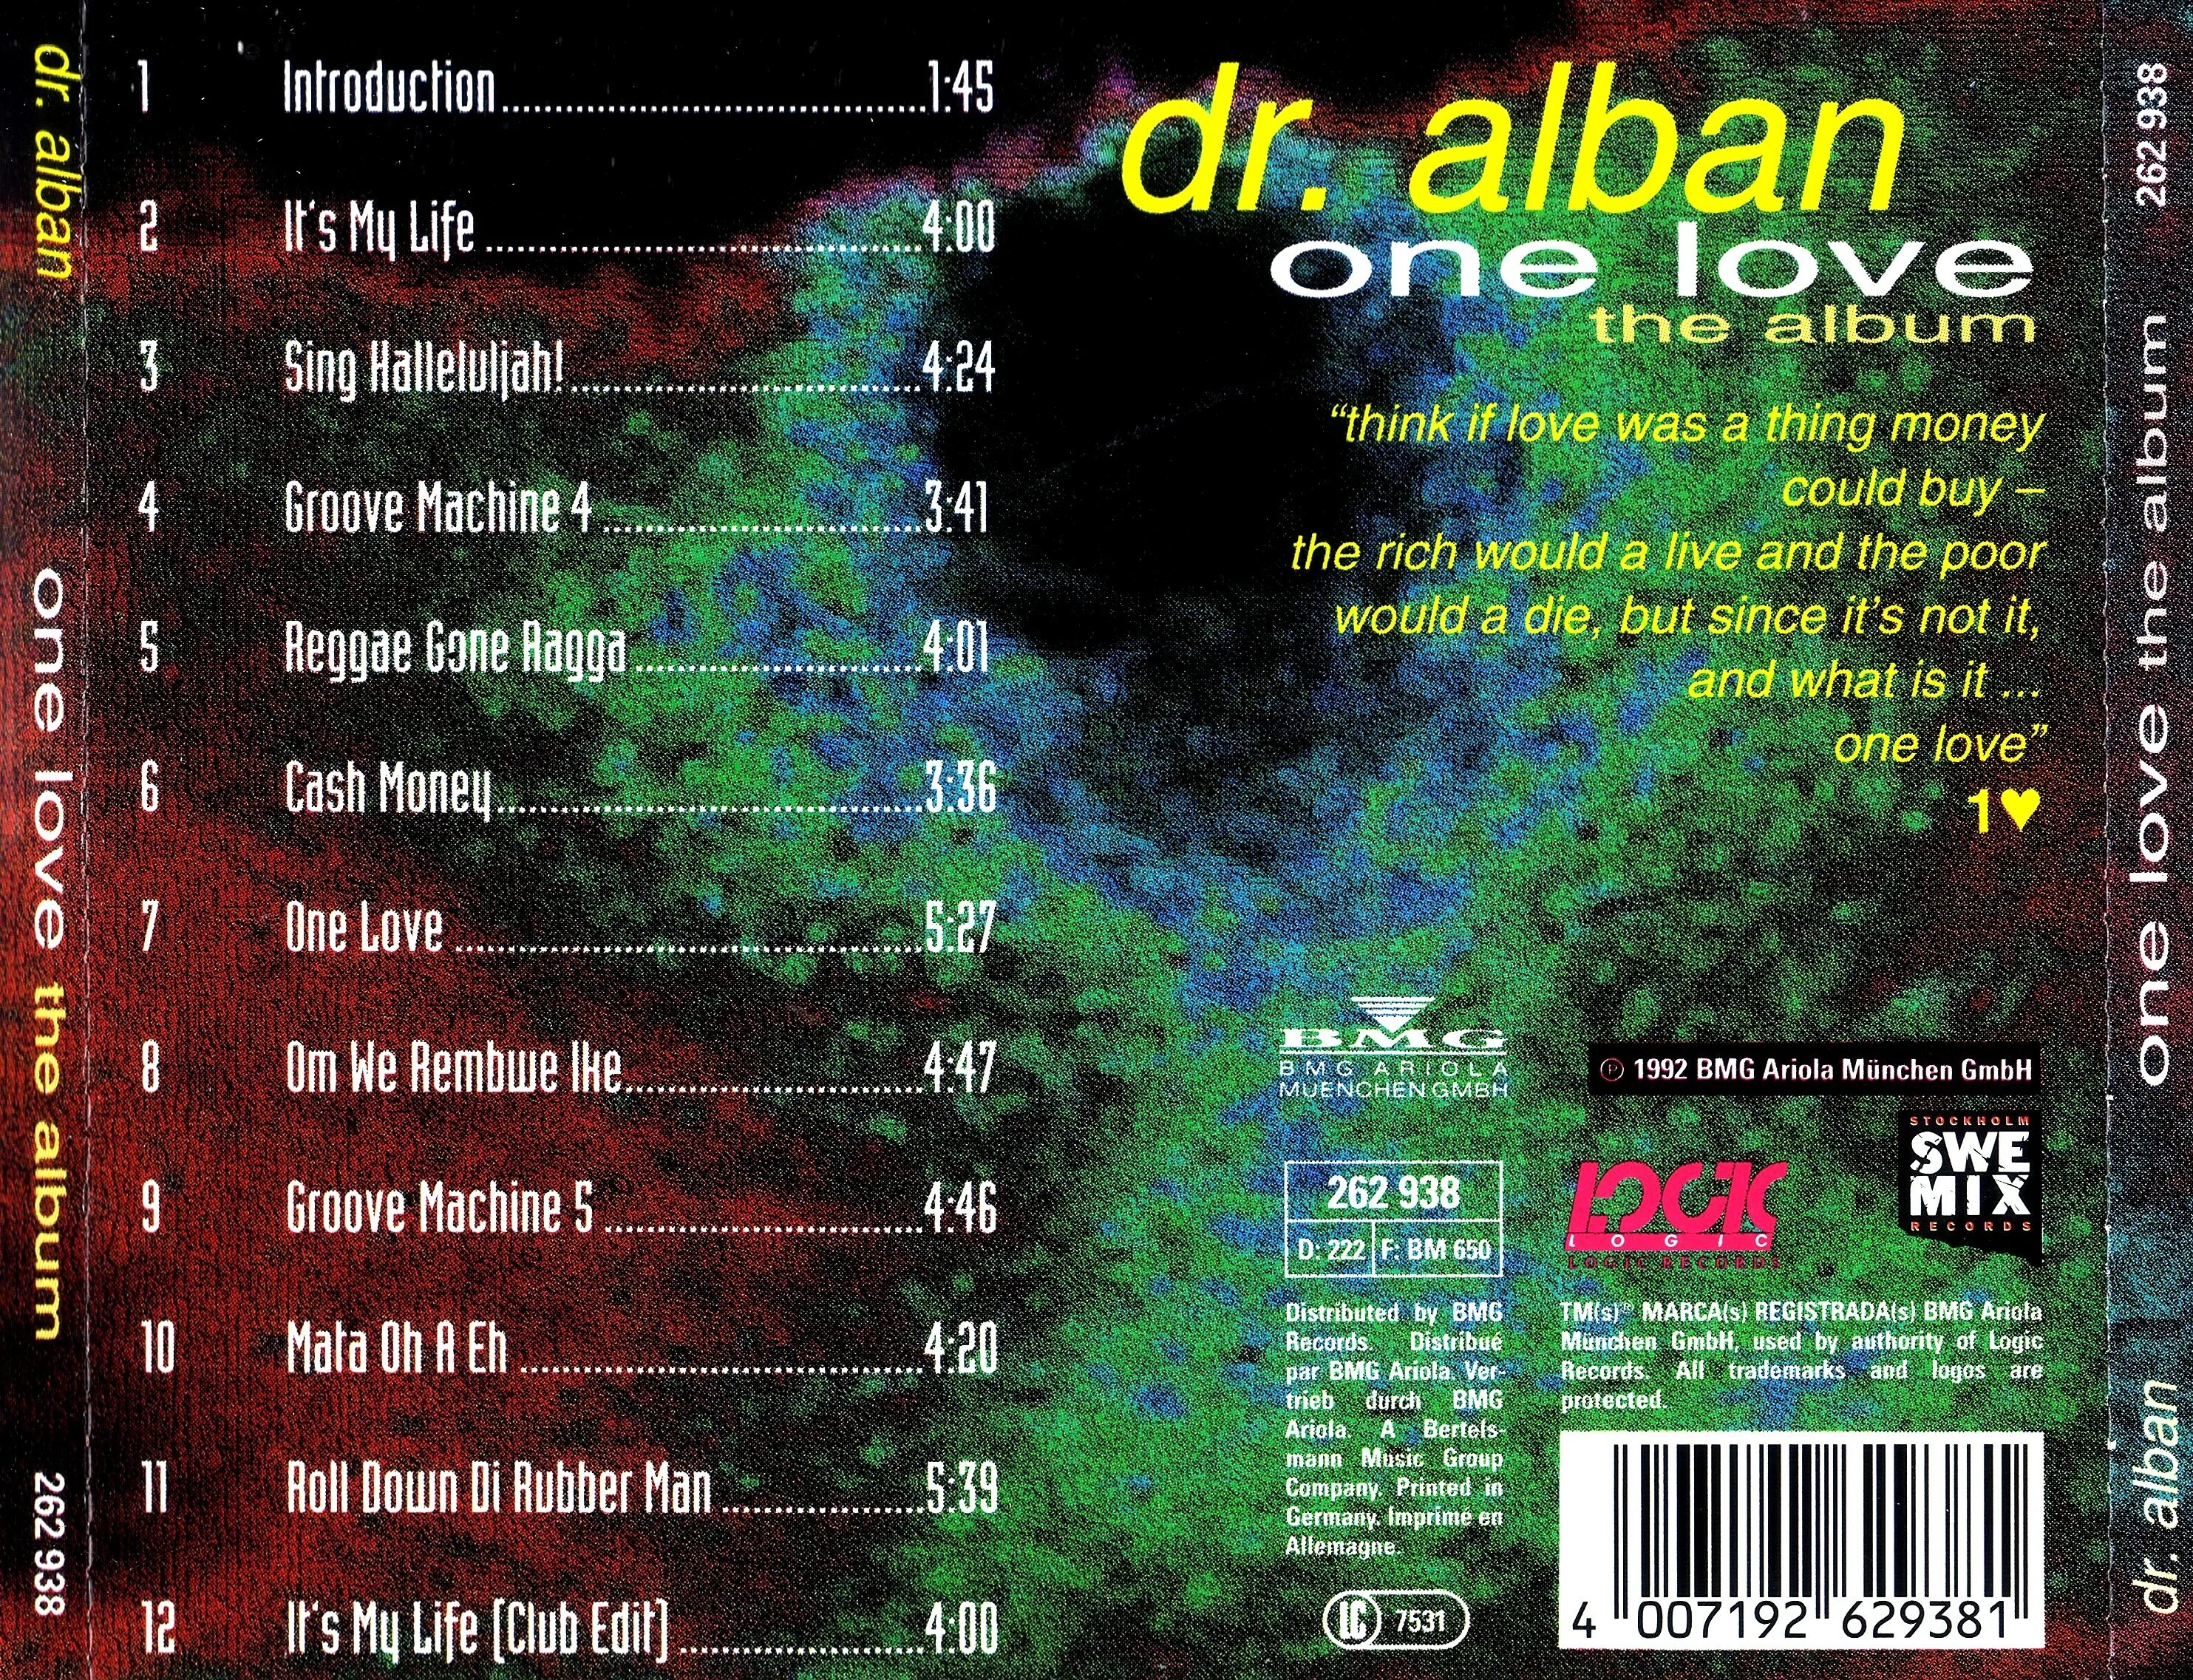 Албан лов ремикс. Dr. Alban one Love the album 1992. Доктор албан 1992. Dr. Alban one Love (the album). One Love доктор албан.